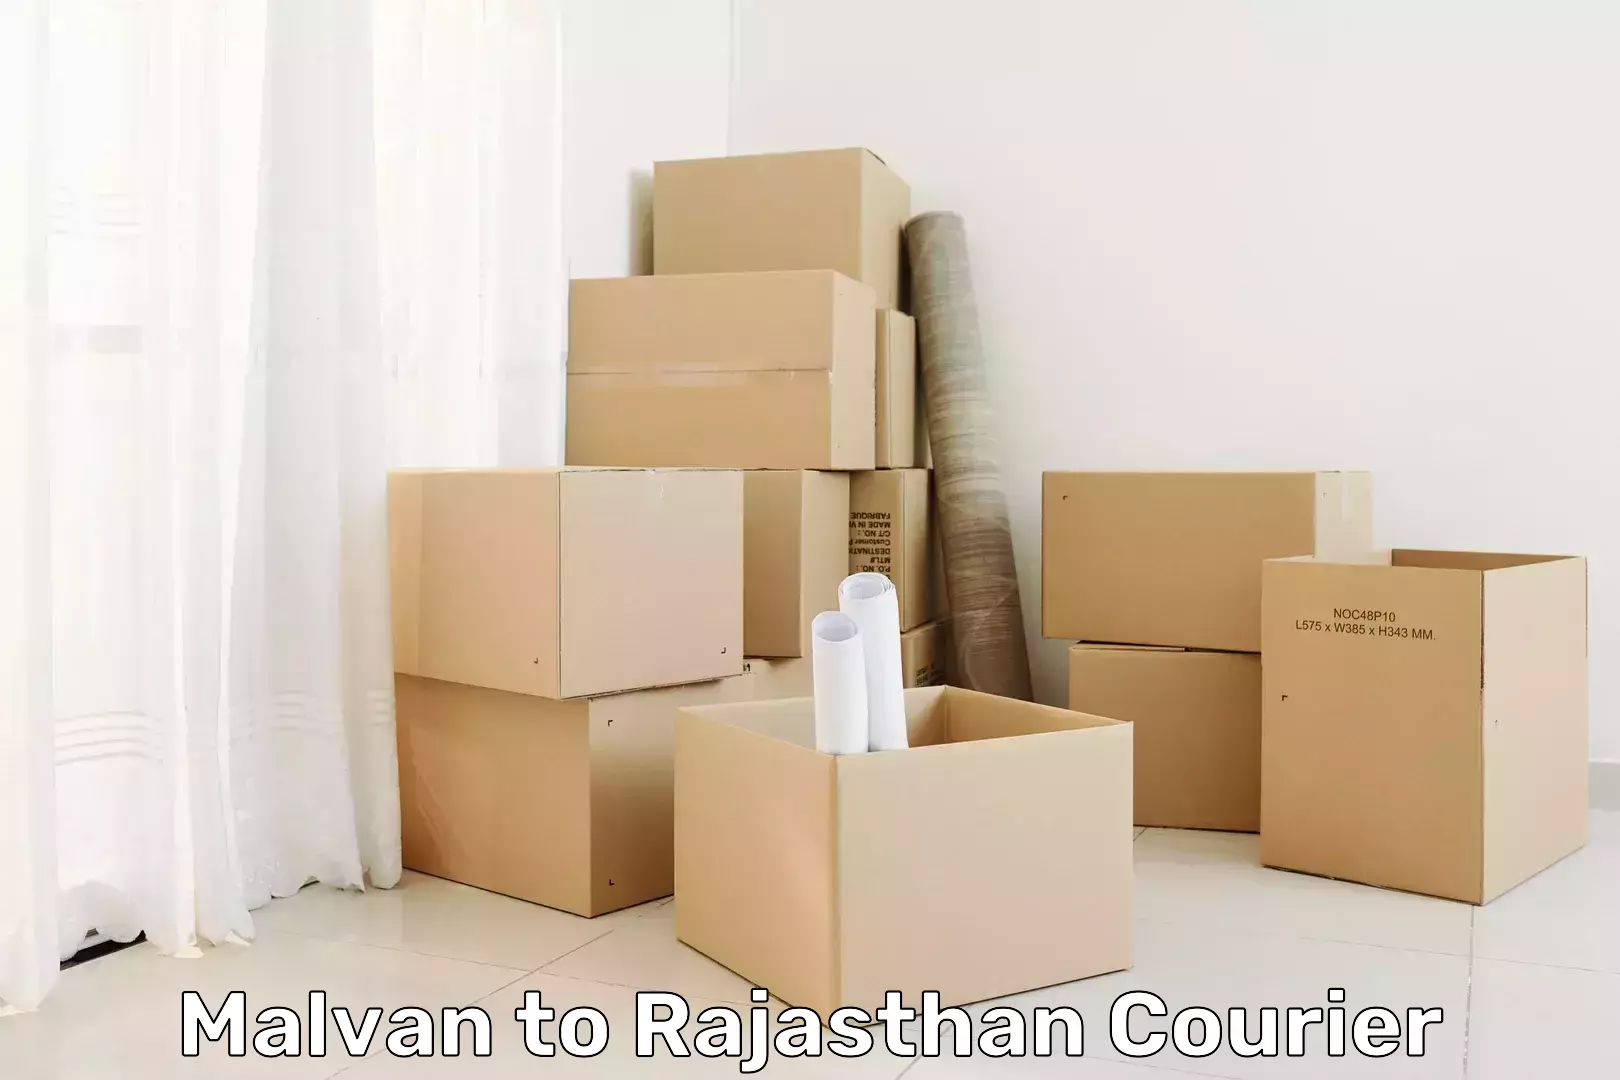 Urgent courier needs Malvan to Nasirabad